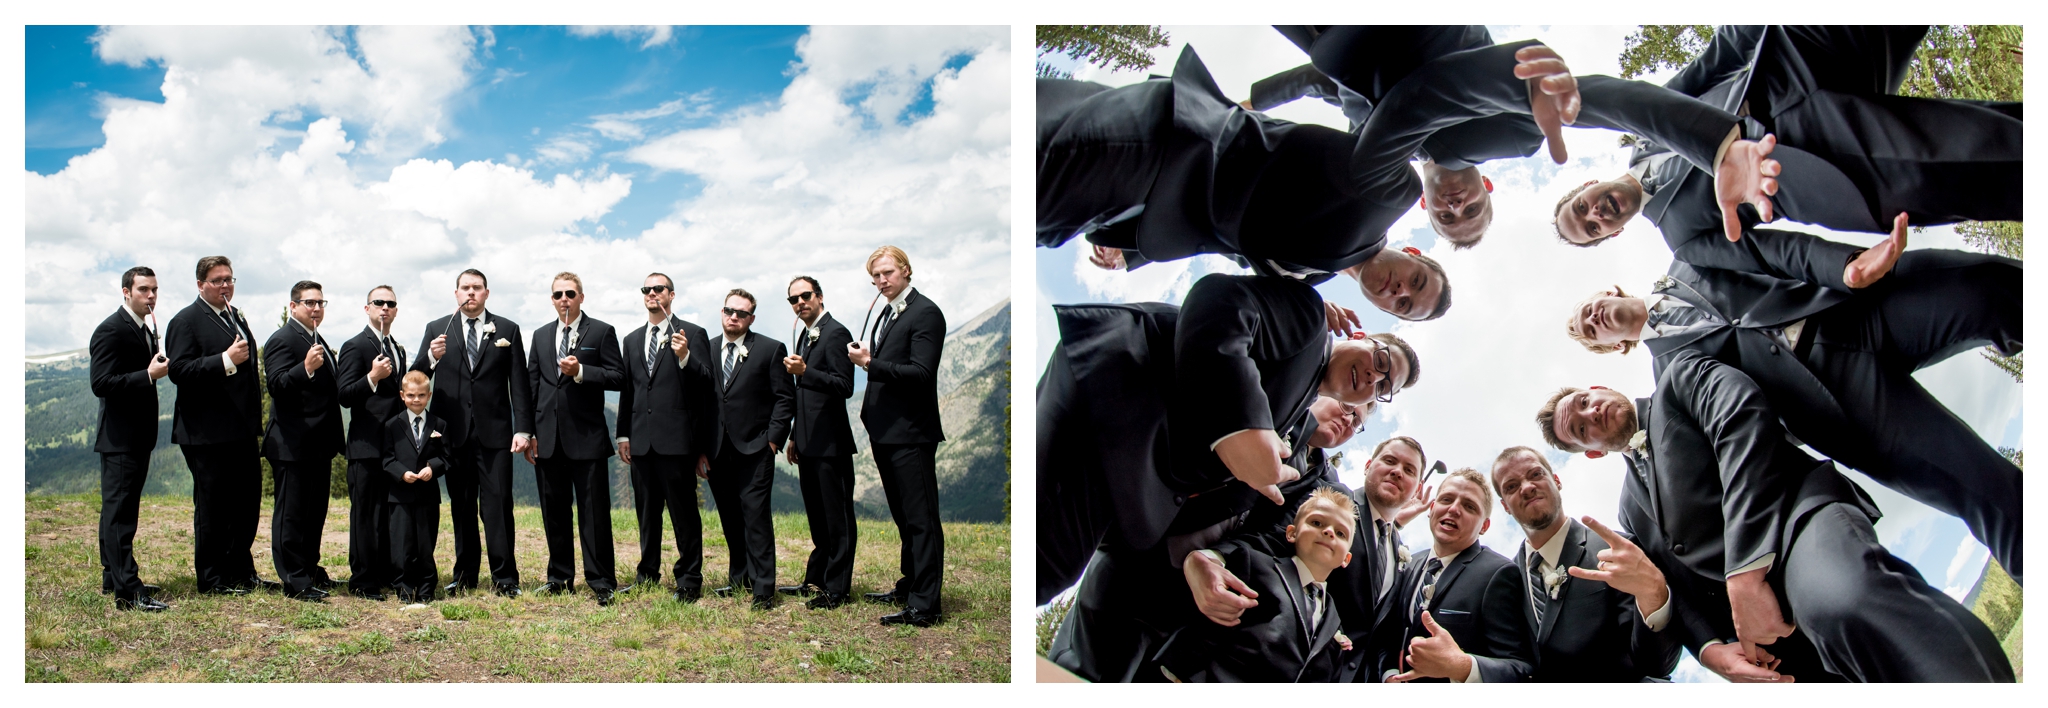 Colorado groomsmen at Copper Mountain wedding